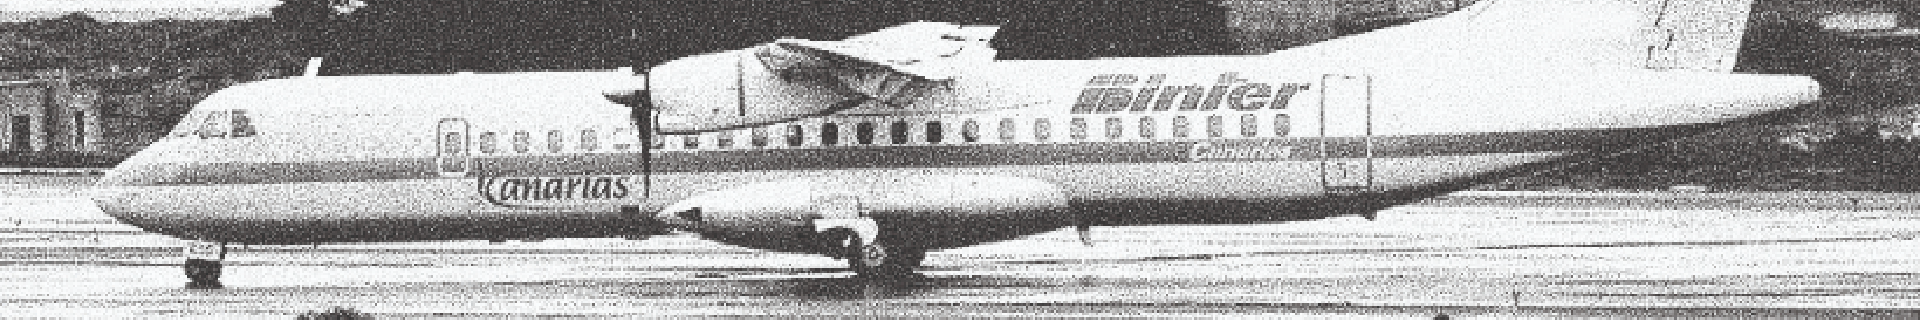 Avión modelo ATR antiguo Binter